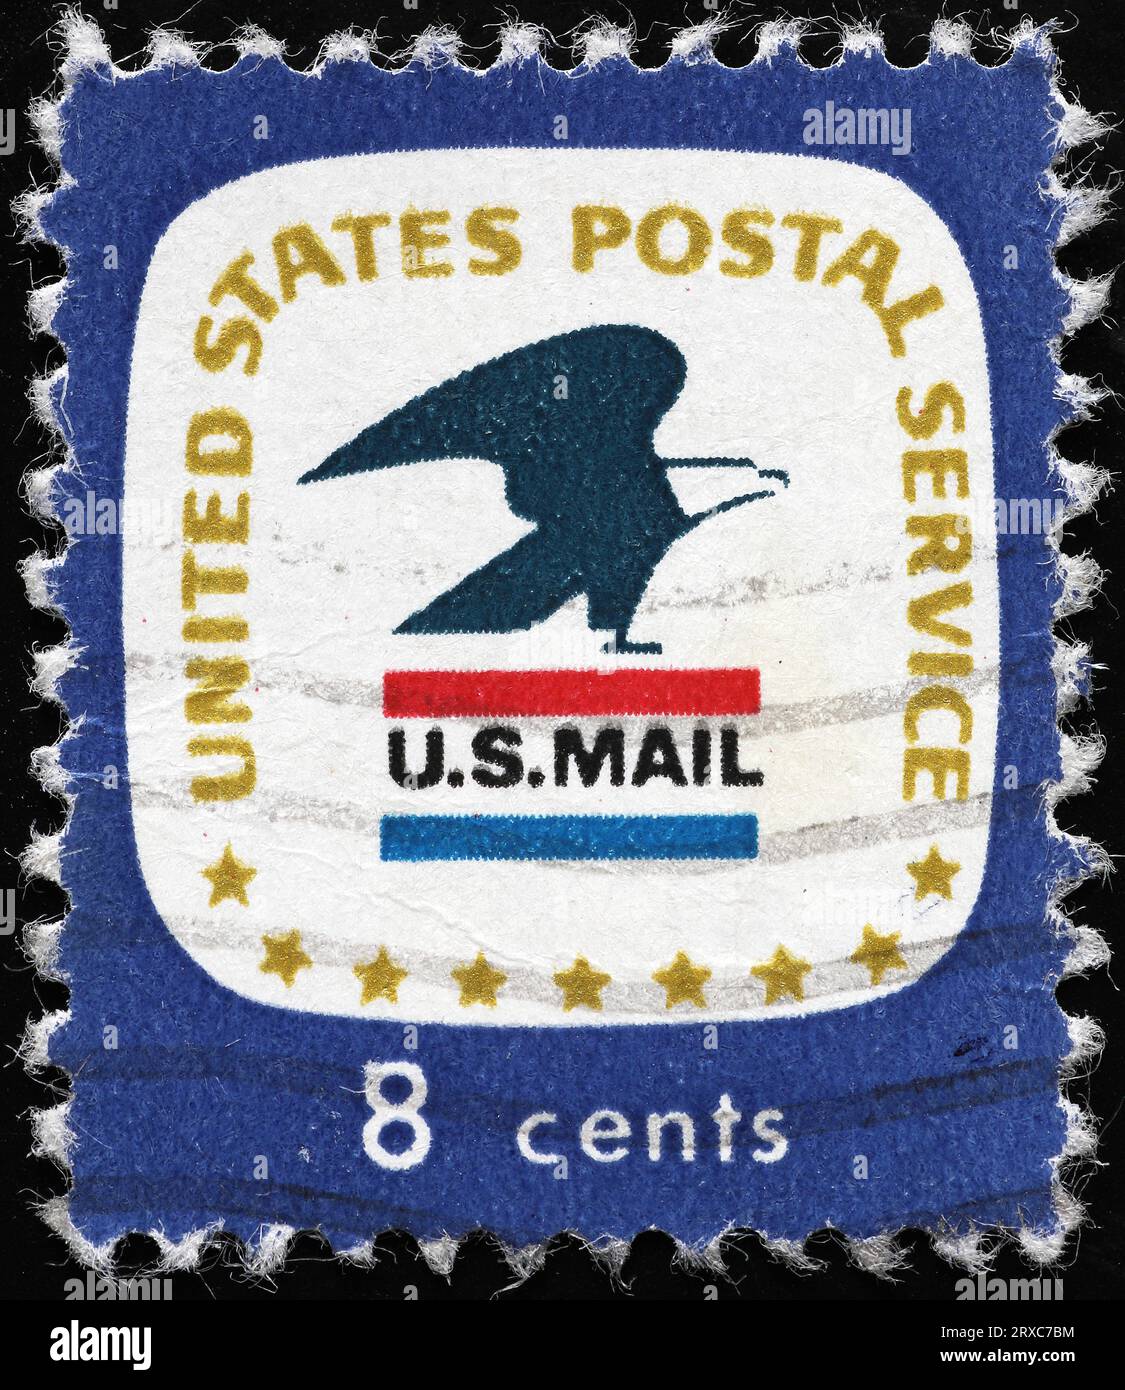 L'aquila americana, simbolo del servizio postale degli Stati Uniti, sul francobollo Foto Stock